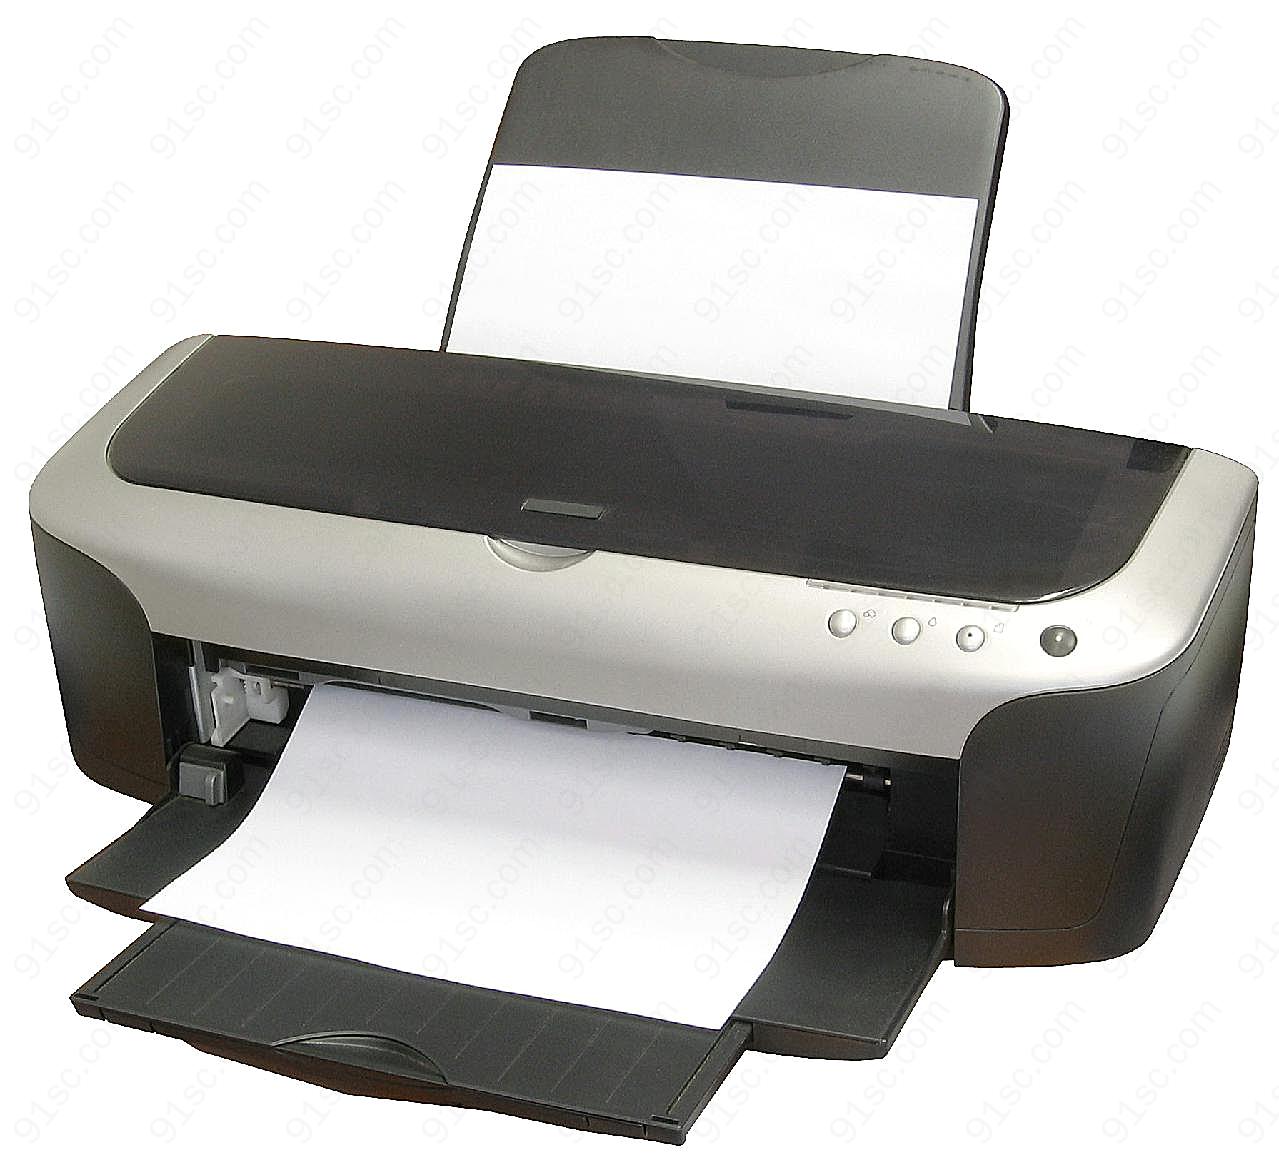 打印机图片电子设备